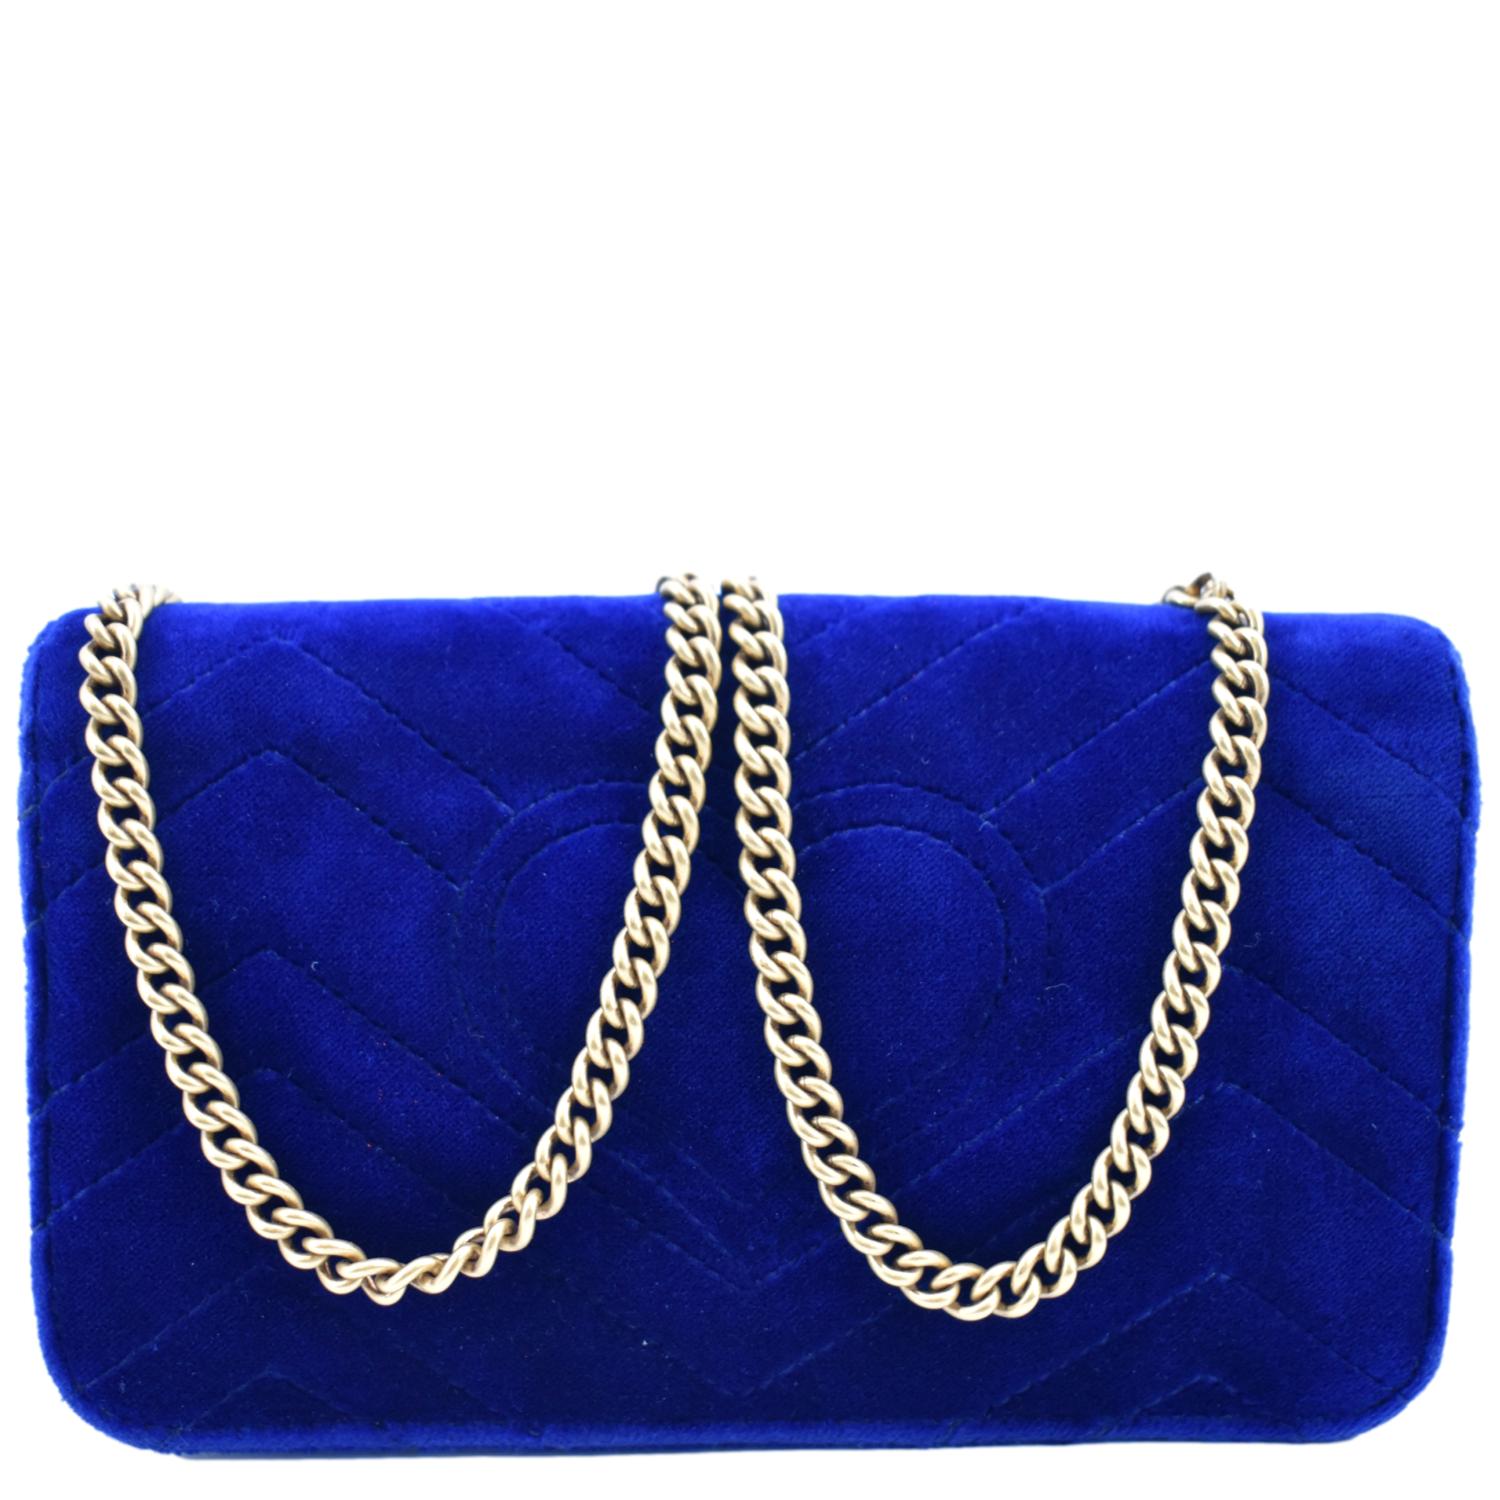 Small Leather Bag in Dark Cobalt BLUE. Crossbody / Shoulder Bag /wristlet  in GENUINE Leather. Royal Blue Purse With Adjustable Strap. - Etsy Sweden